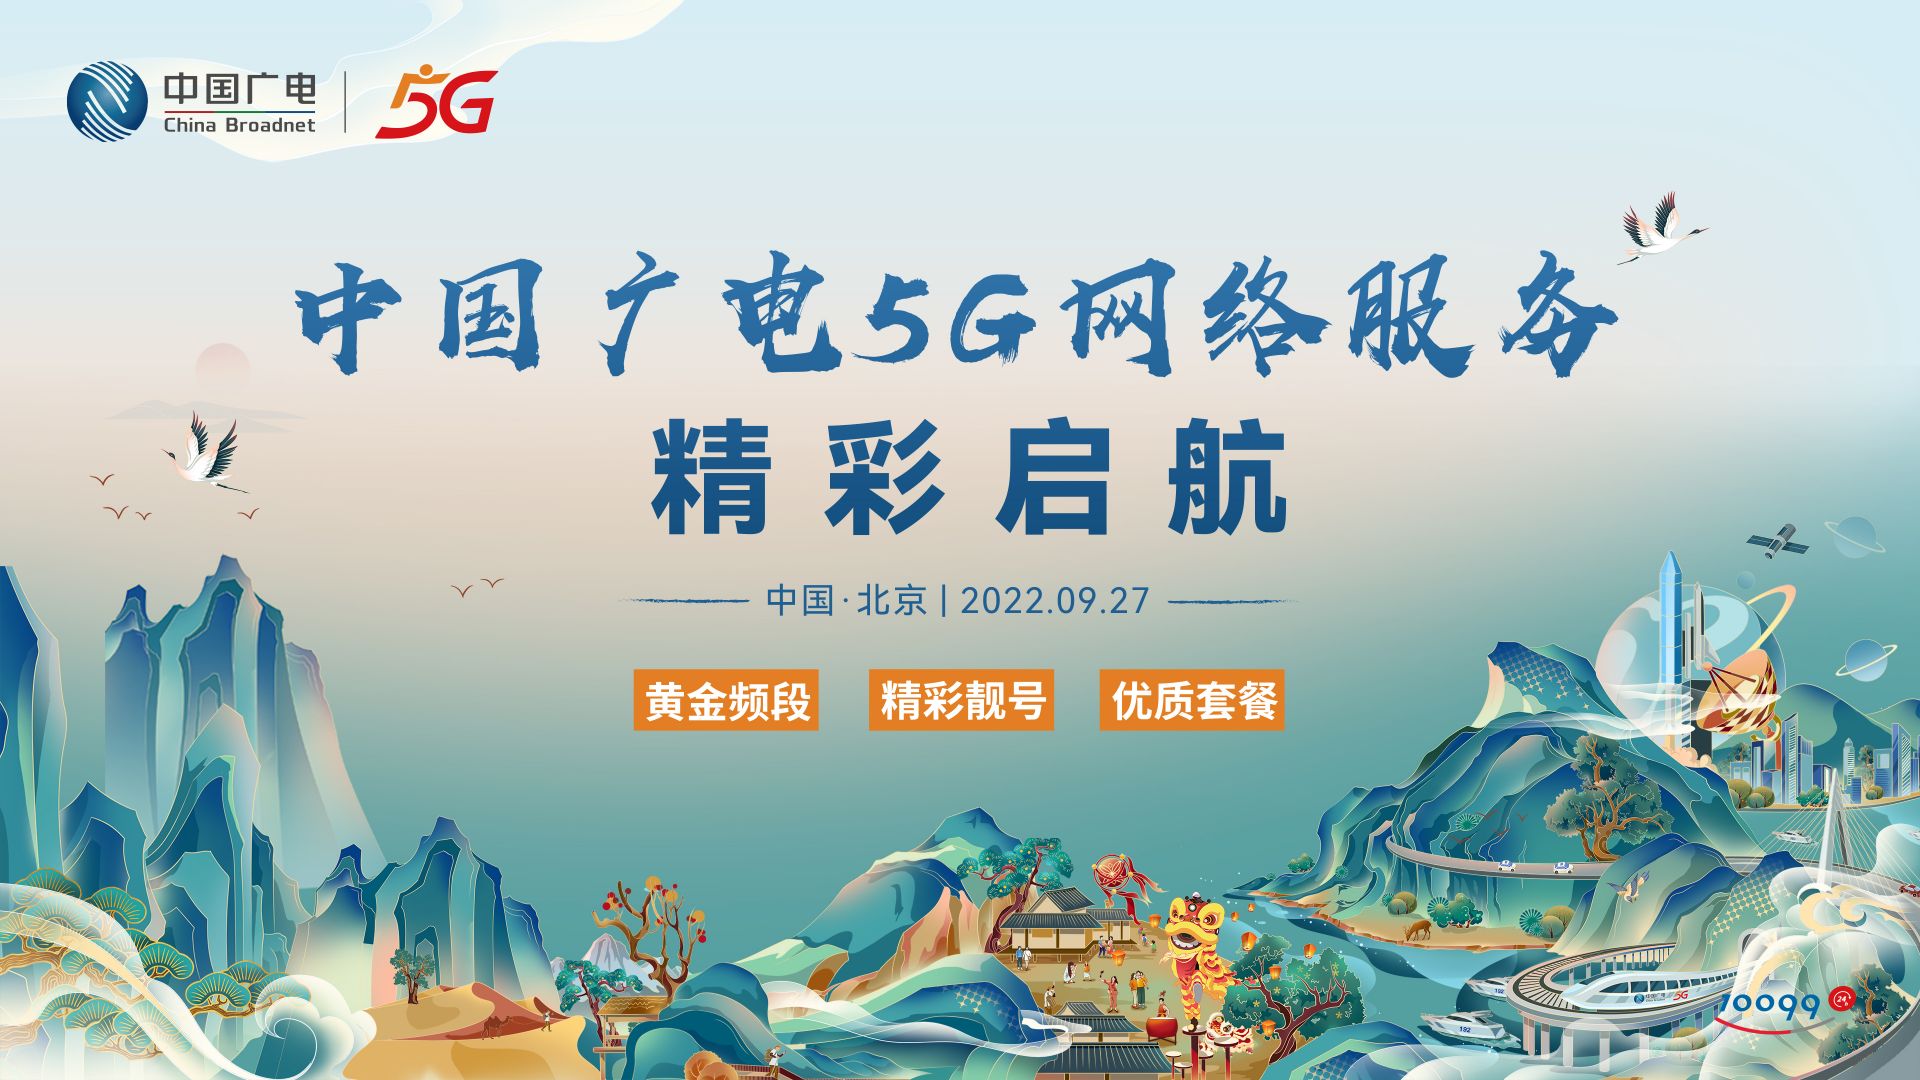 中国广电5G网络服务精彩启航